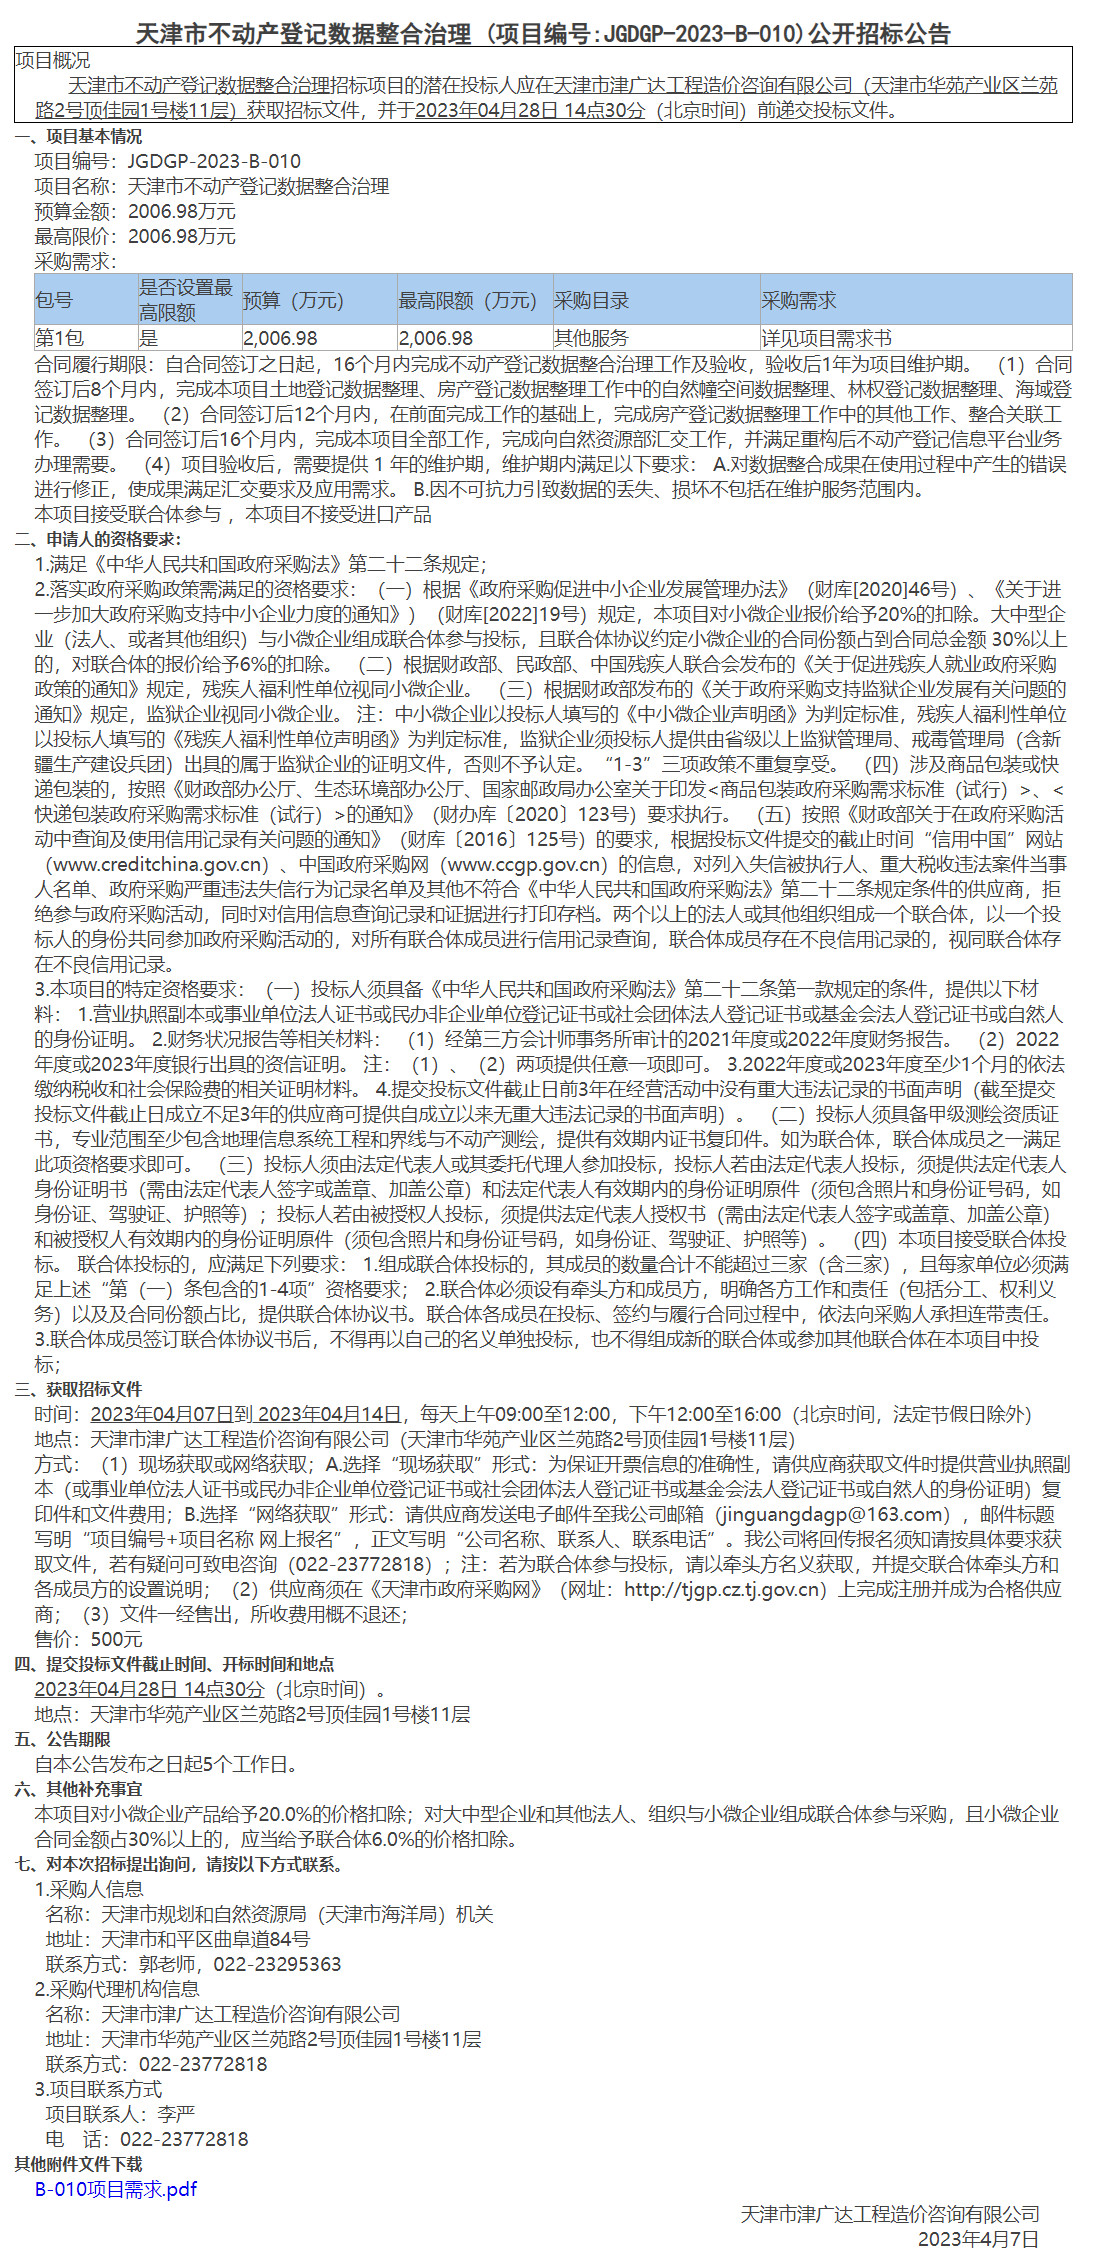 天津市不动产登记数据整合治理(图1)